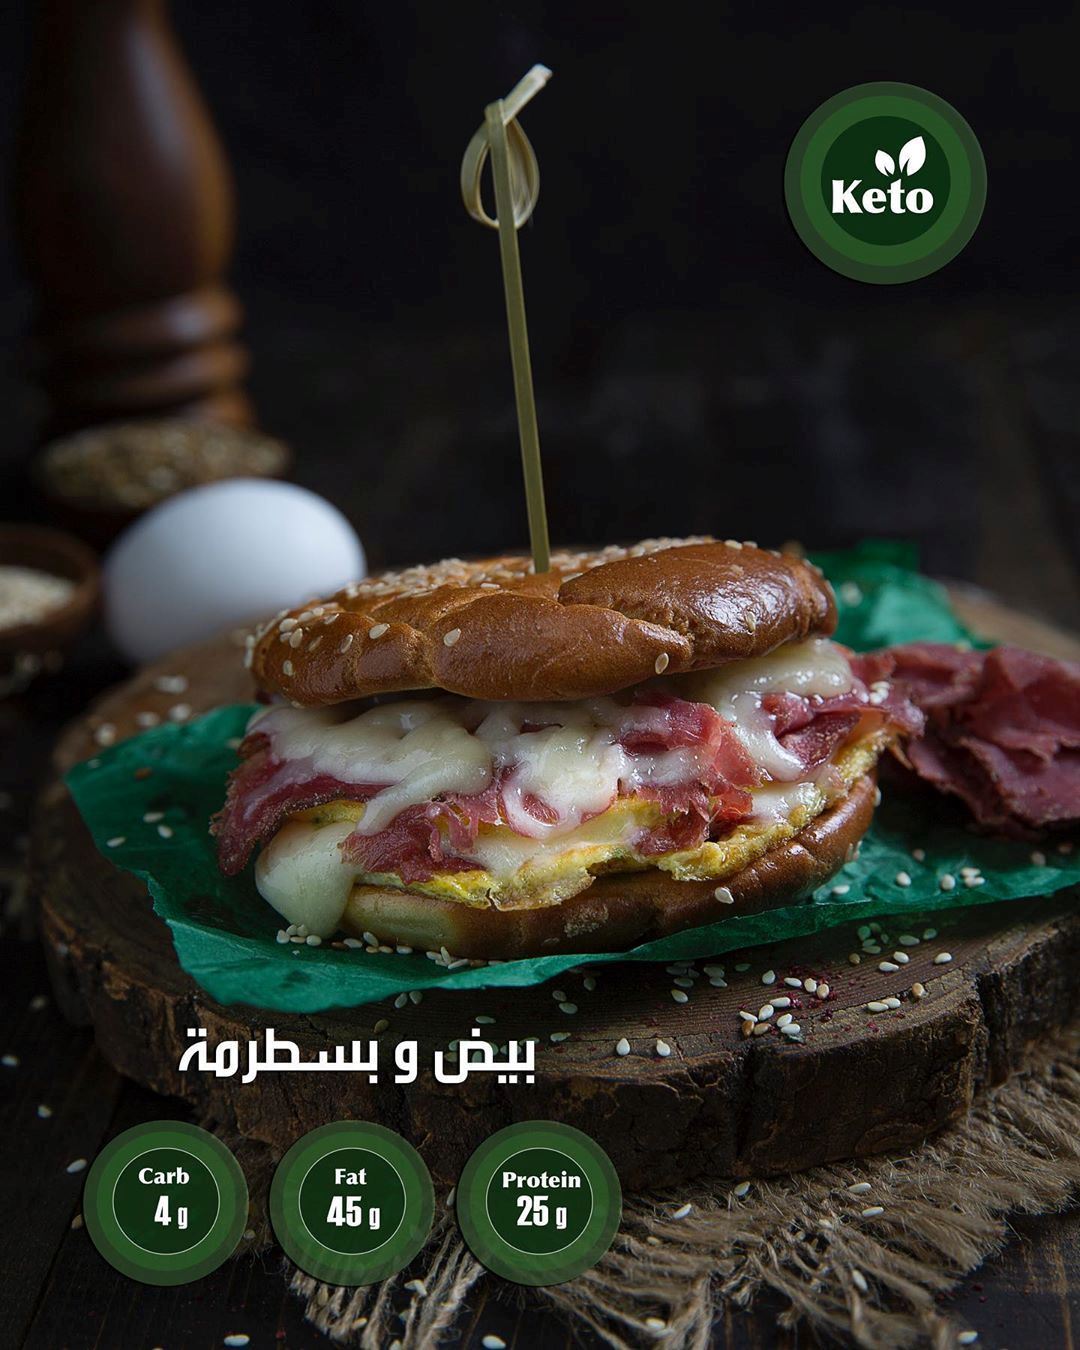 مطعم العصروني في الكويت يطلق قائمة خاصة للكيتو